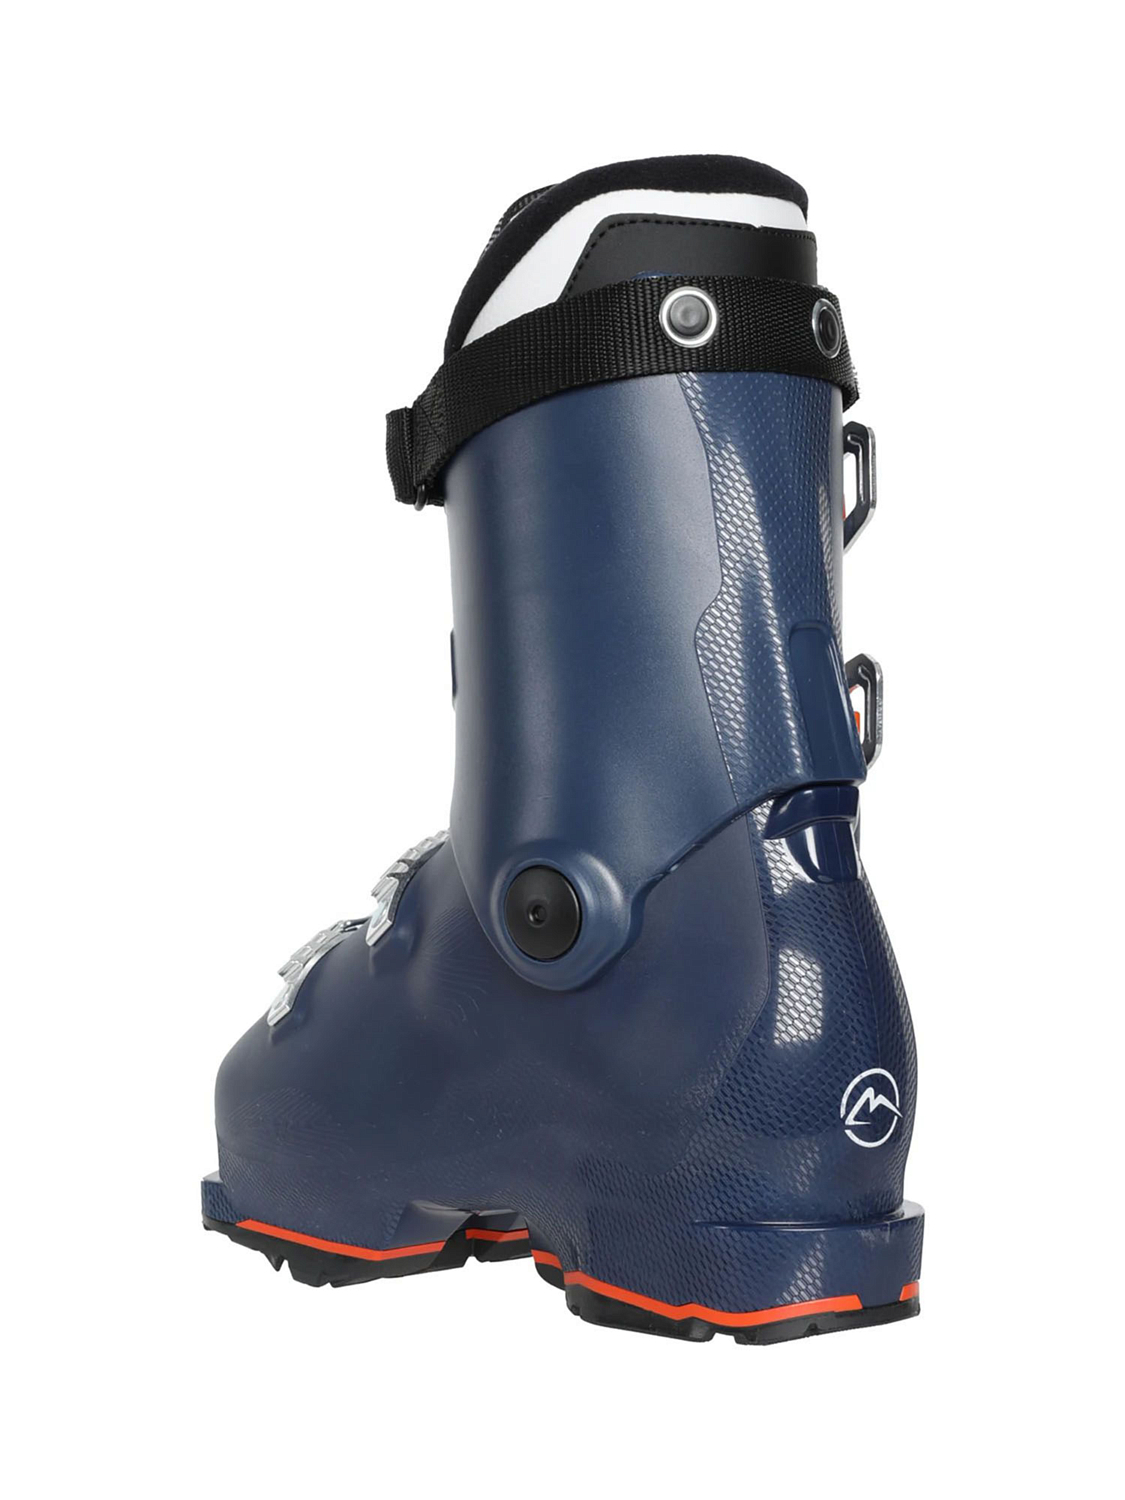 Горнолыжные ботинки детские ROXA Rfit J 70 Blue/Orange